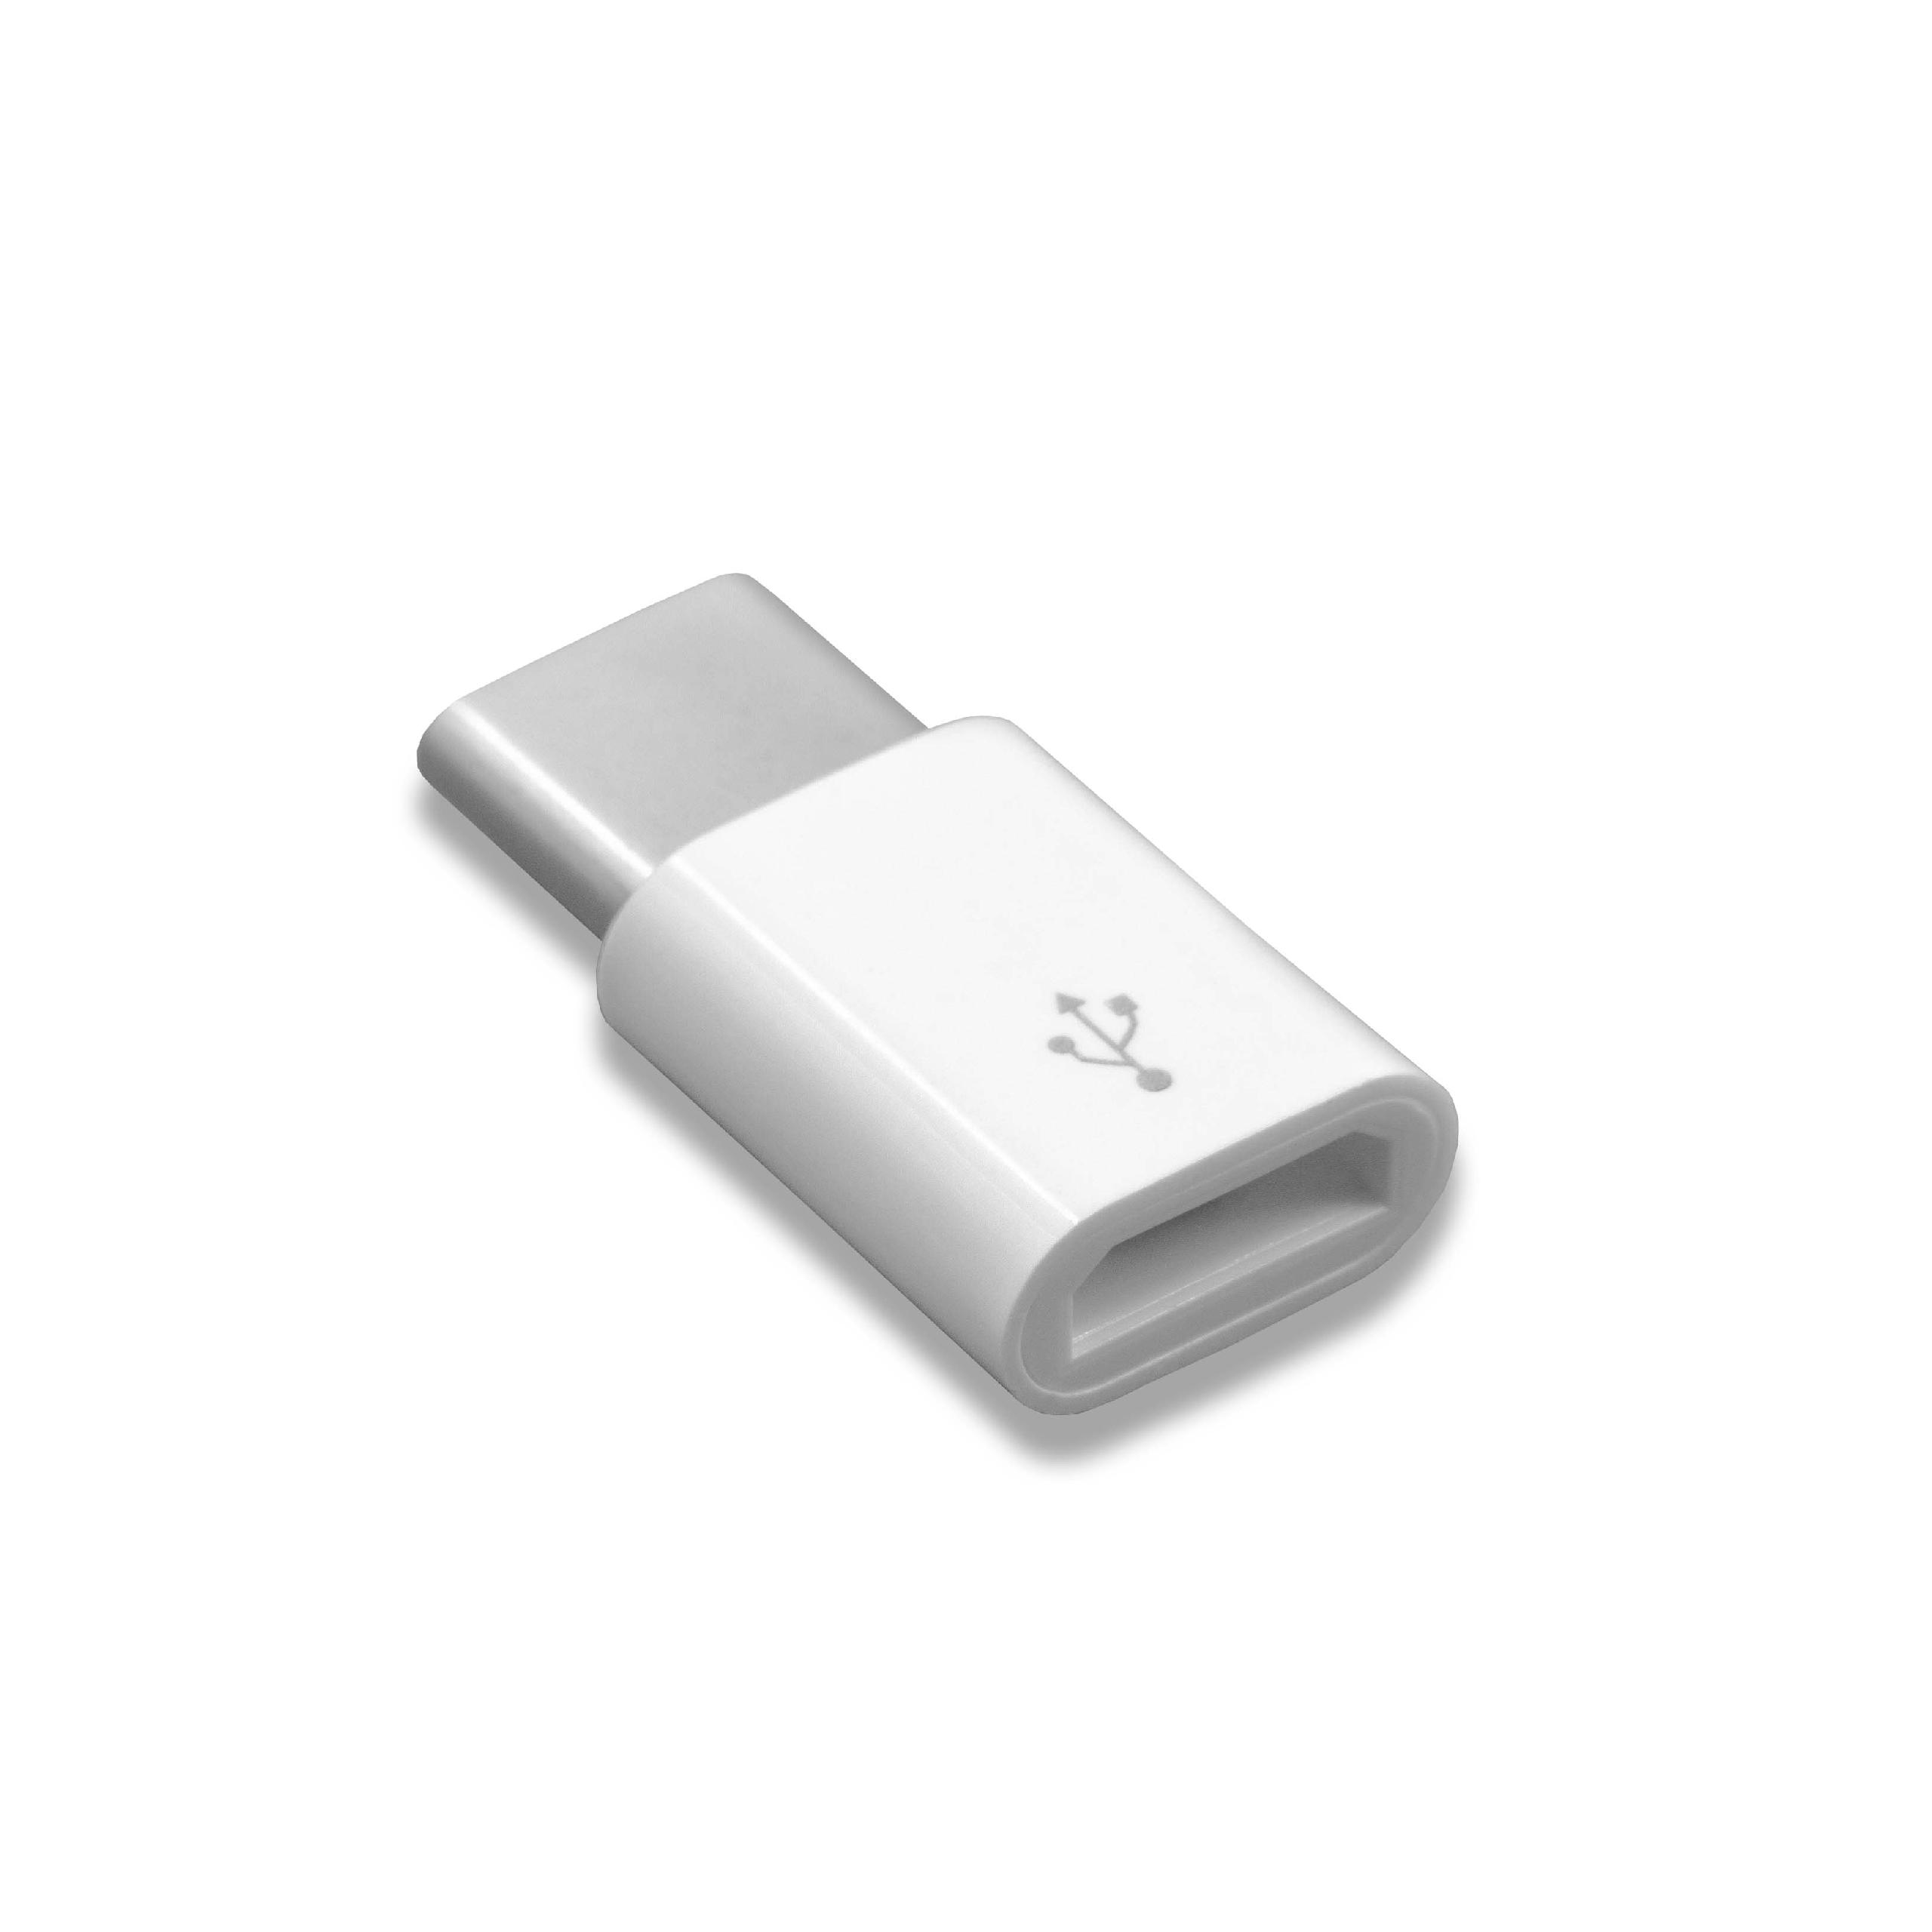 Adapteur OTG USB Type C (mâle) à Micro USB (femelle) pour smartphone, tablette, ordinateur portable